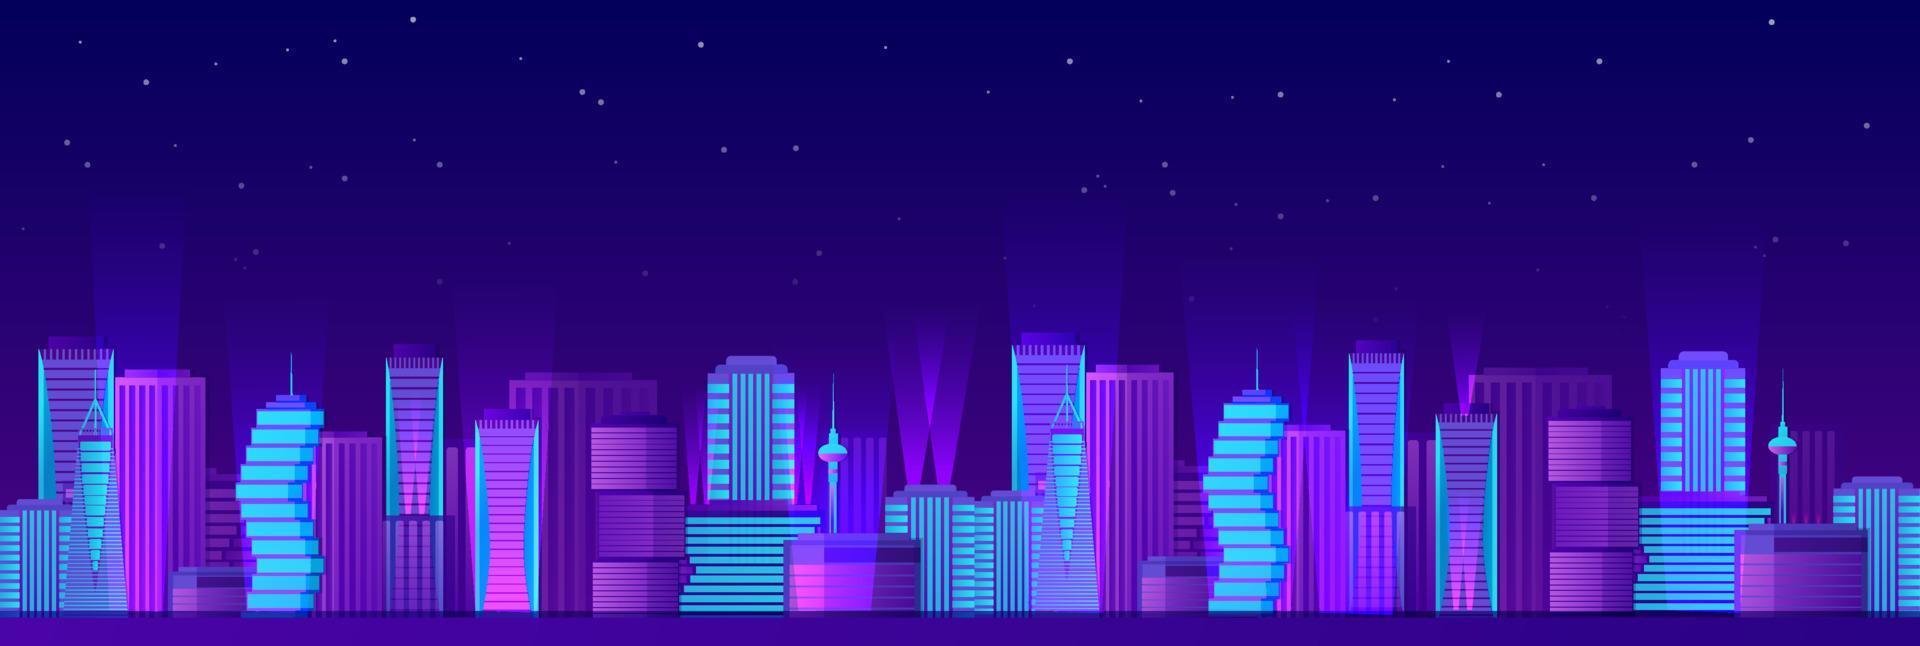 urbano neon notte paesaggio. luminosa viola grattacieli con blu leggero su sfondo di buio stellato vettore cielo.